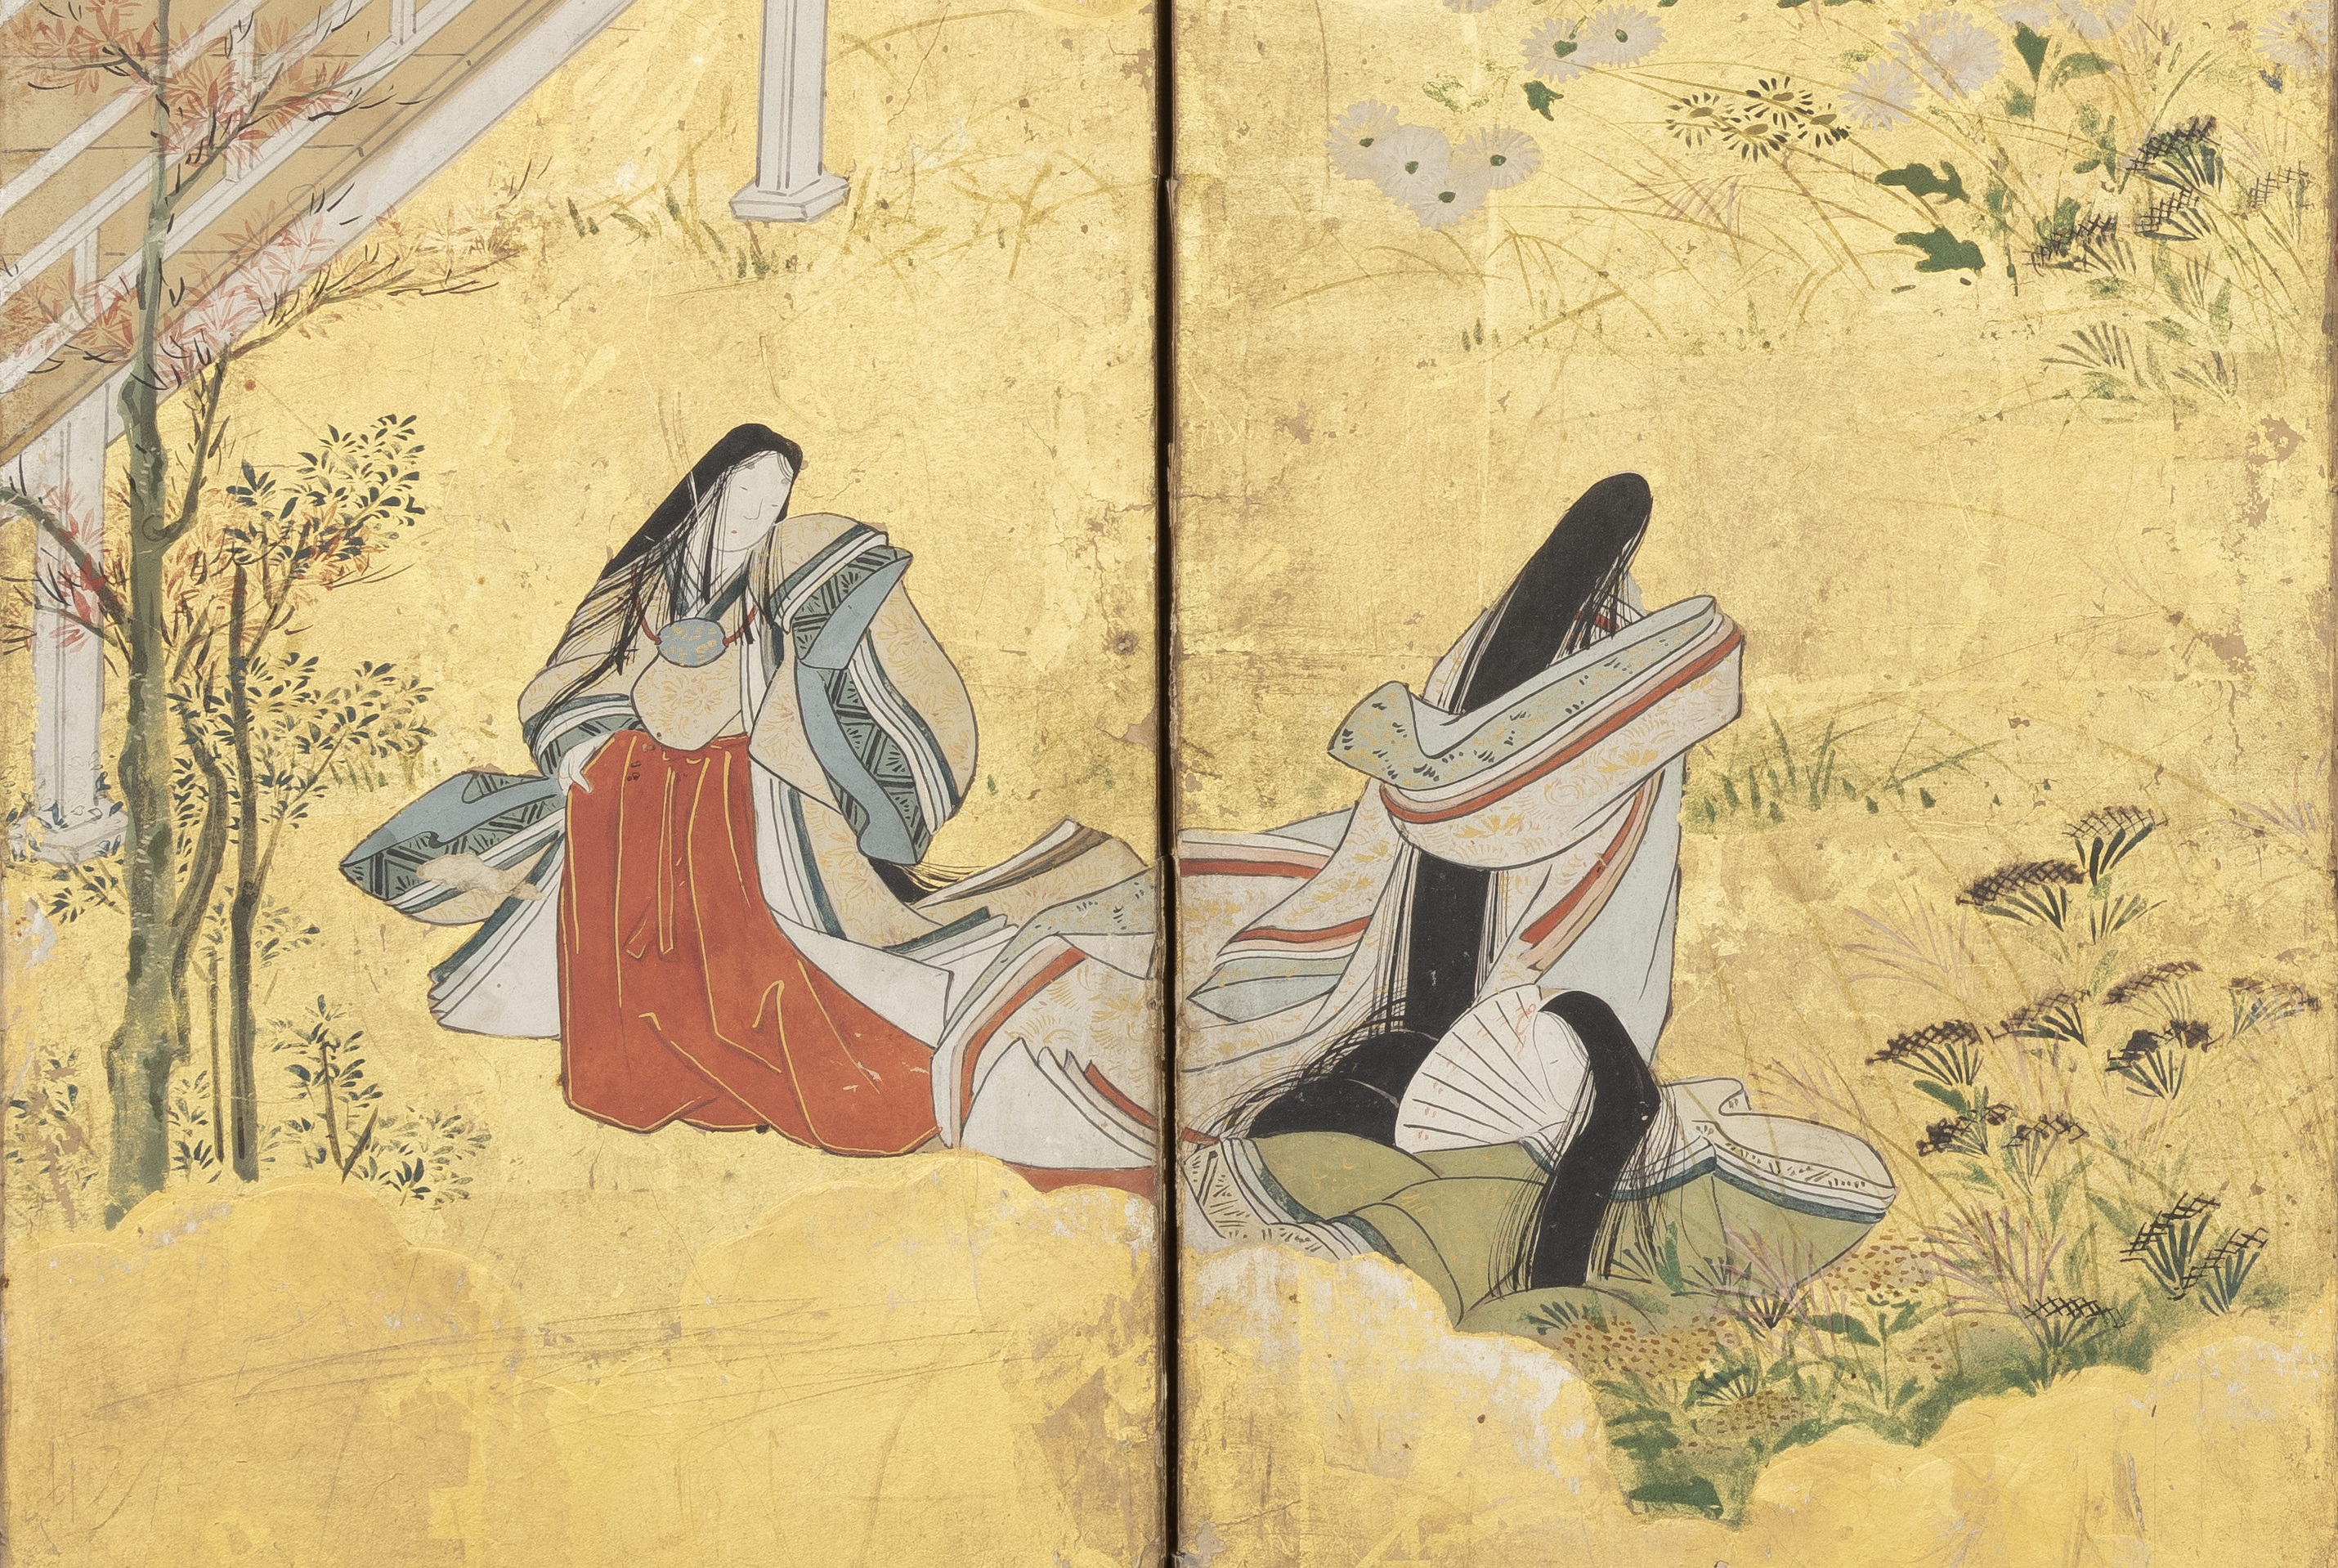 Dibujo japonés de dos mujeres sobre pan de oro.